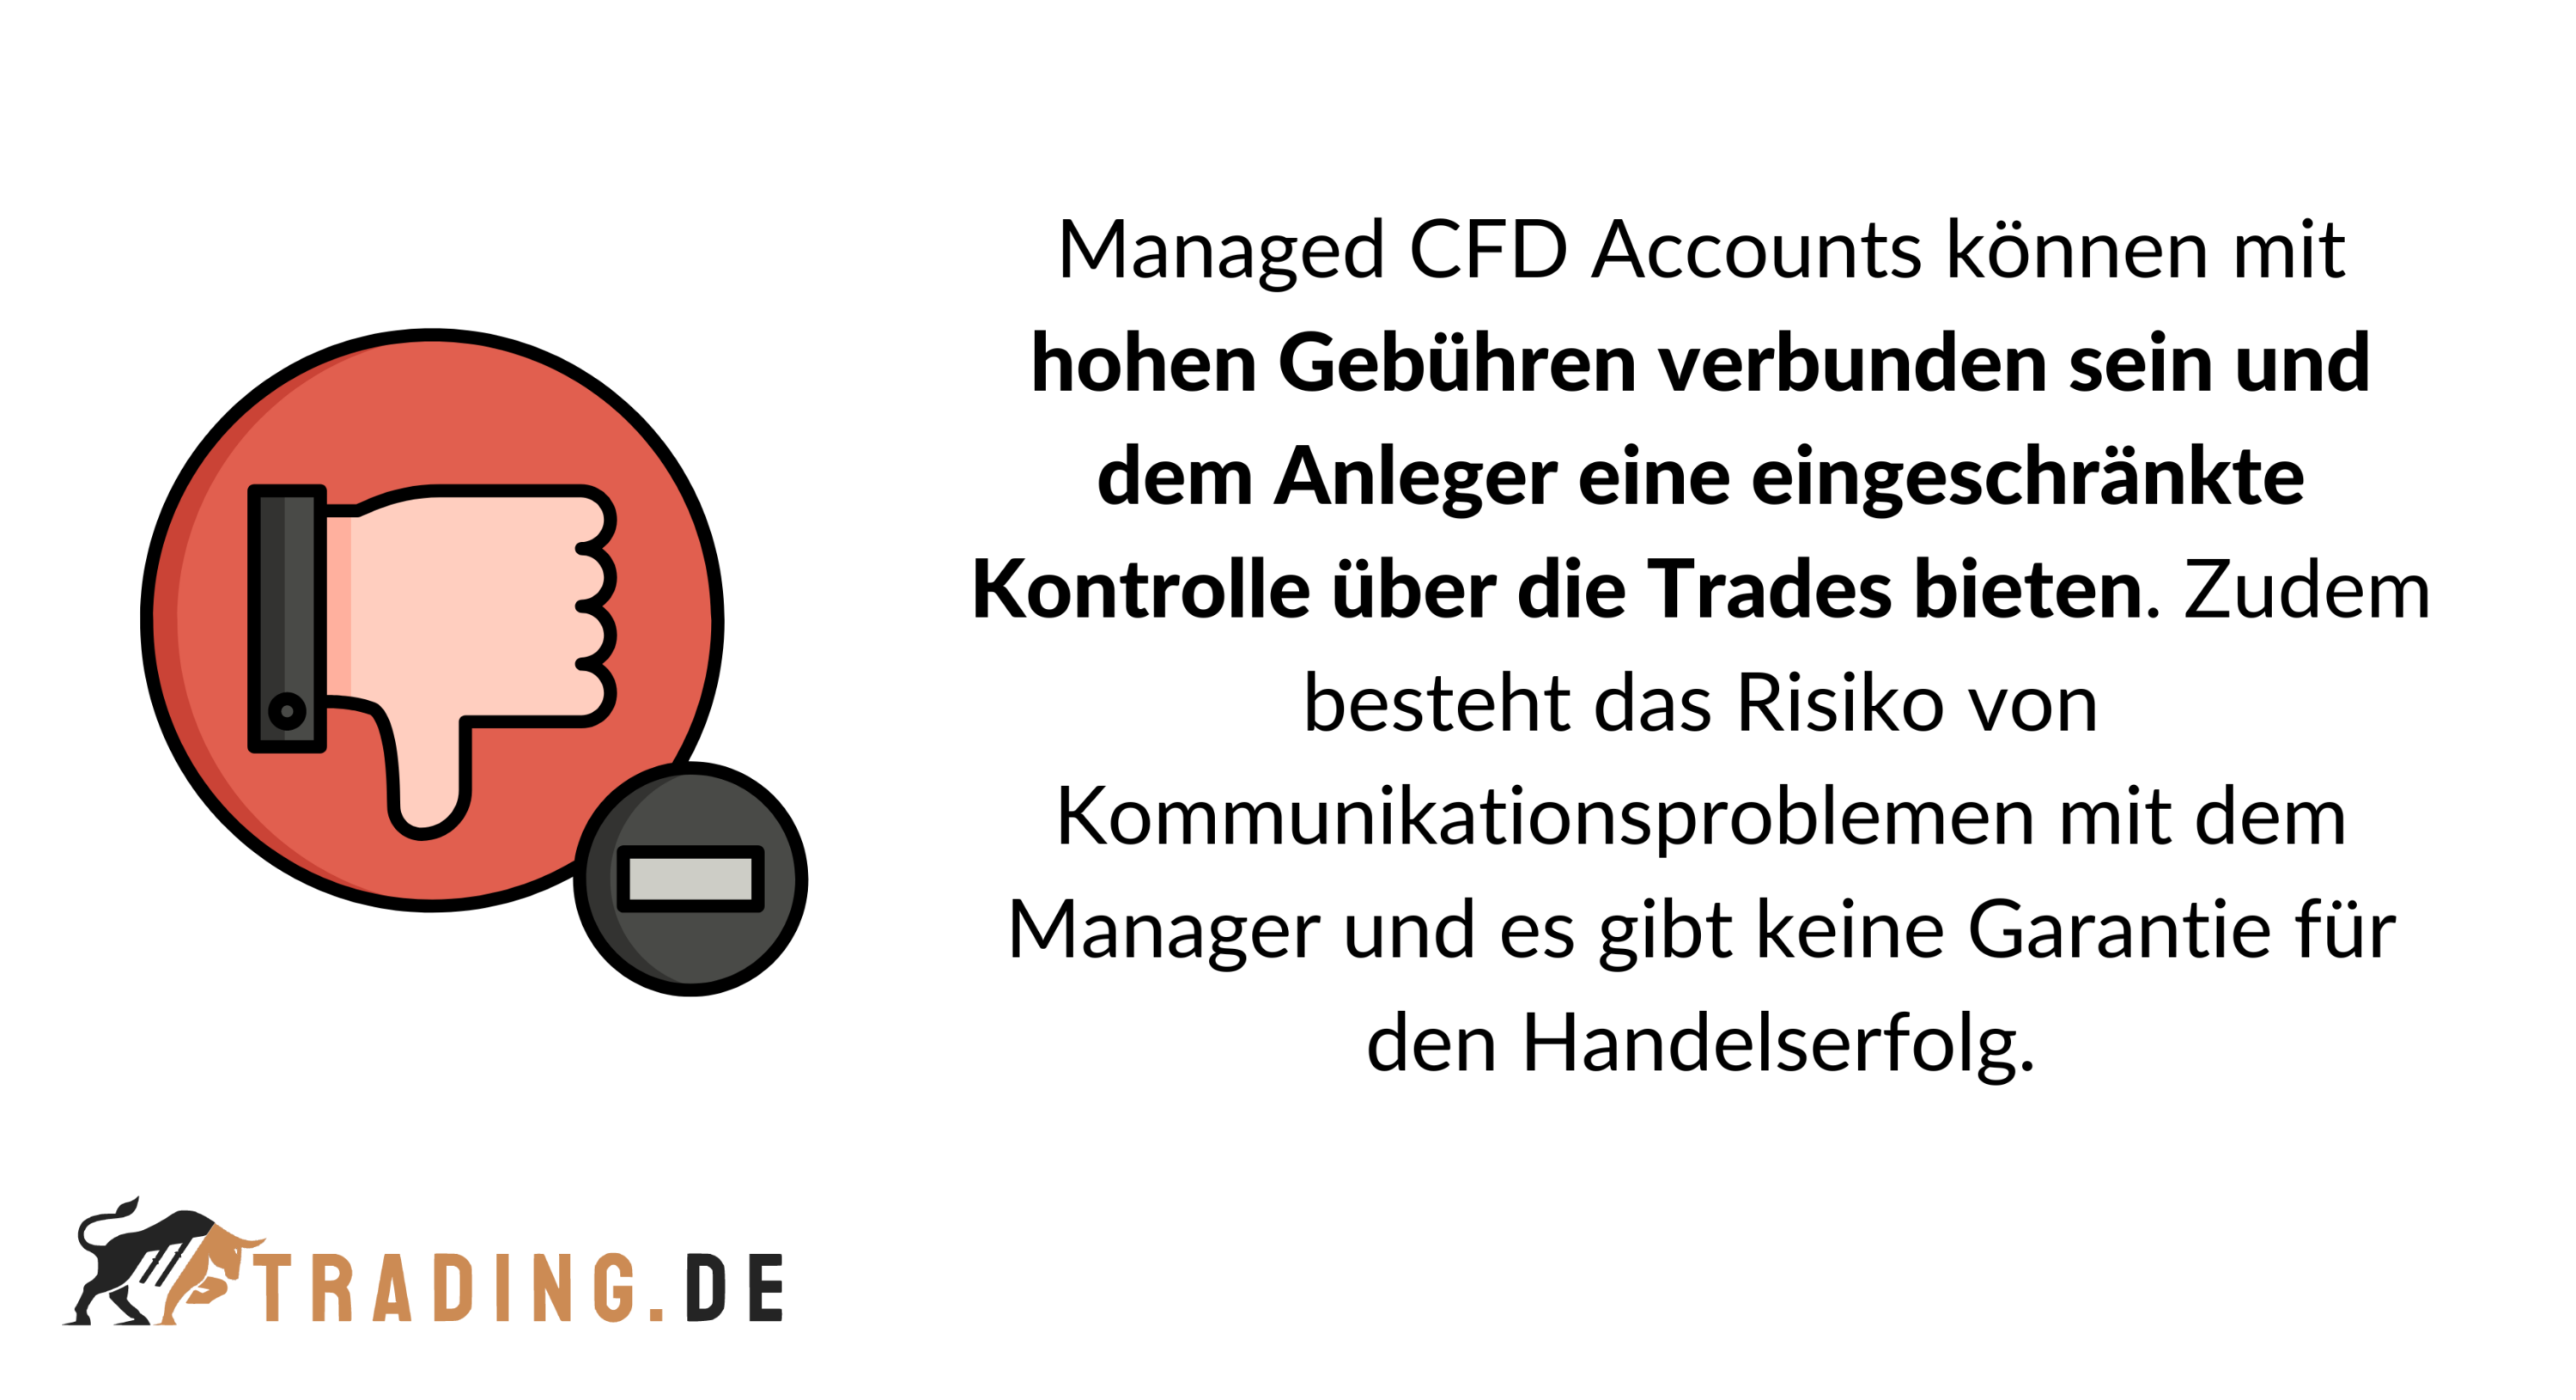 Nachteile von Managed CFD Accounts